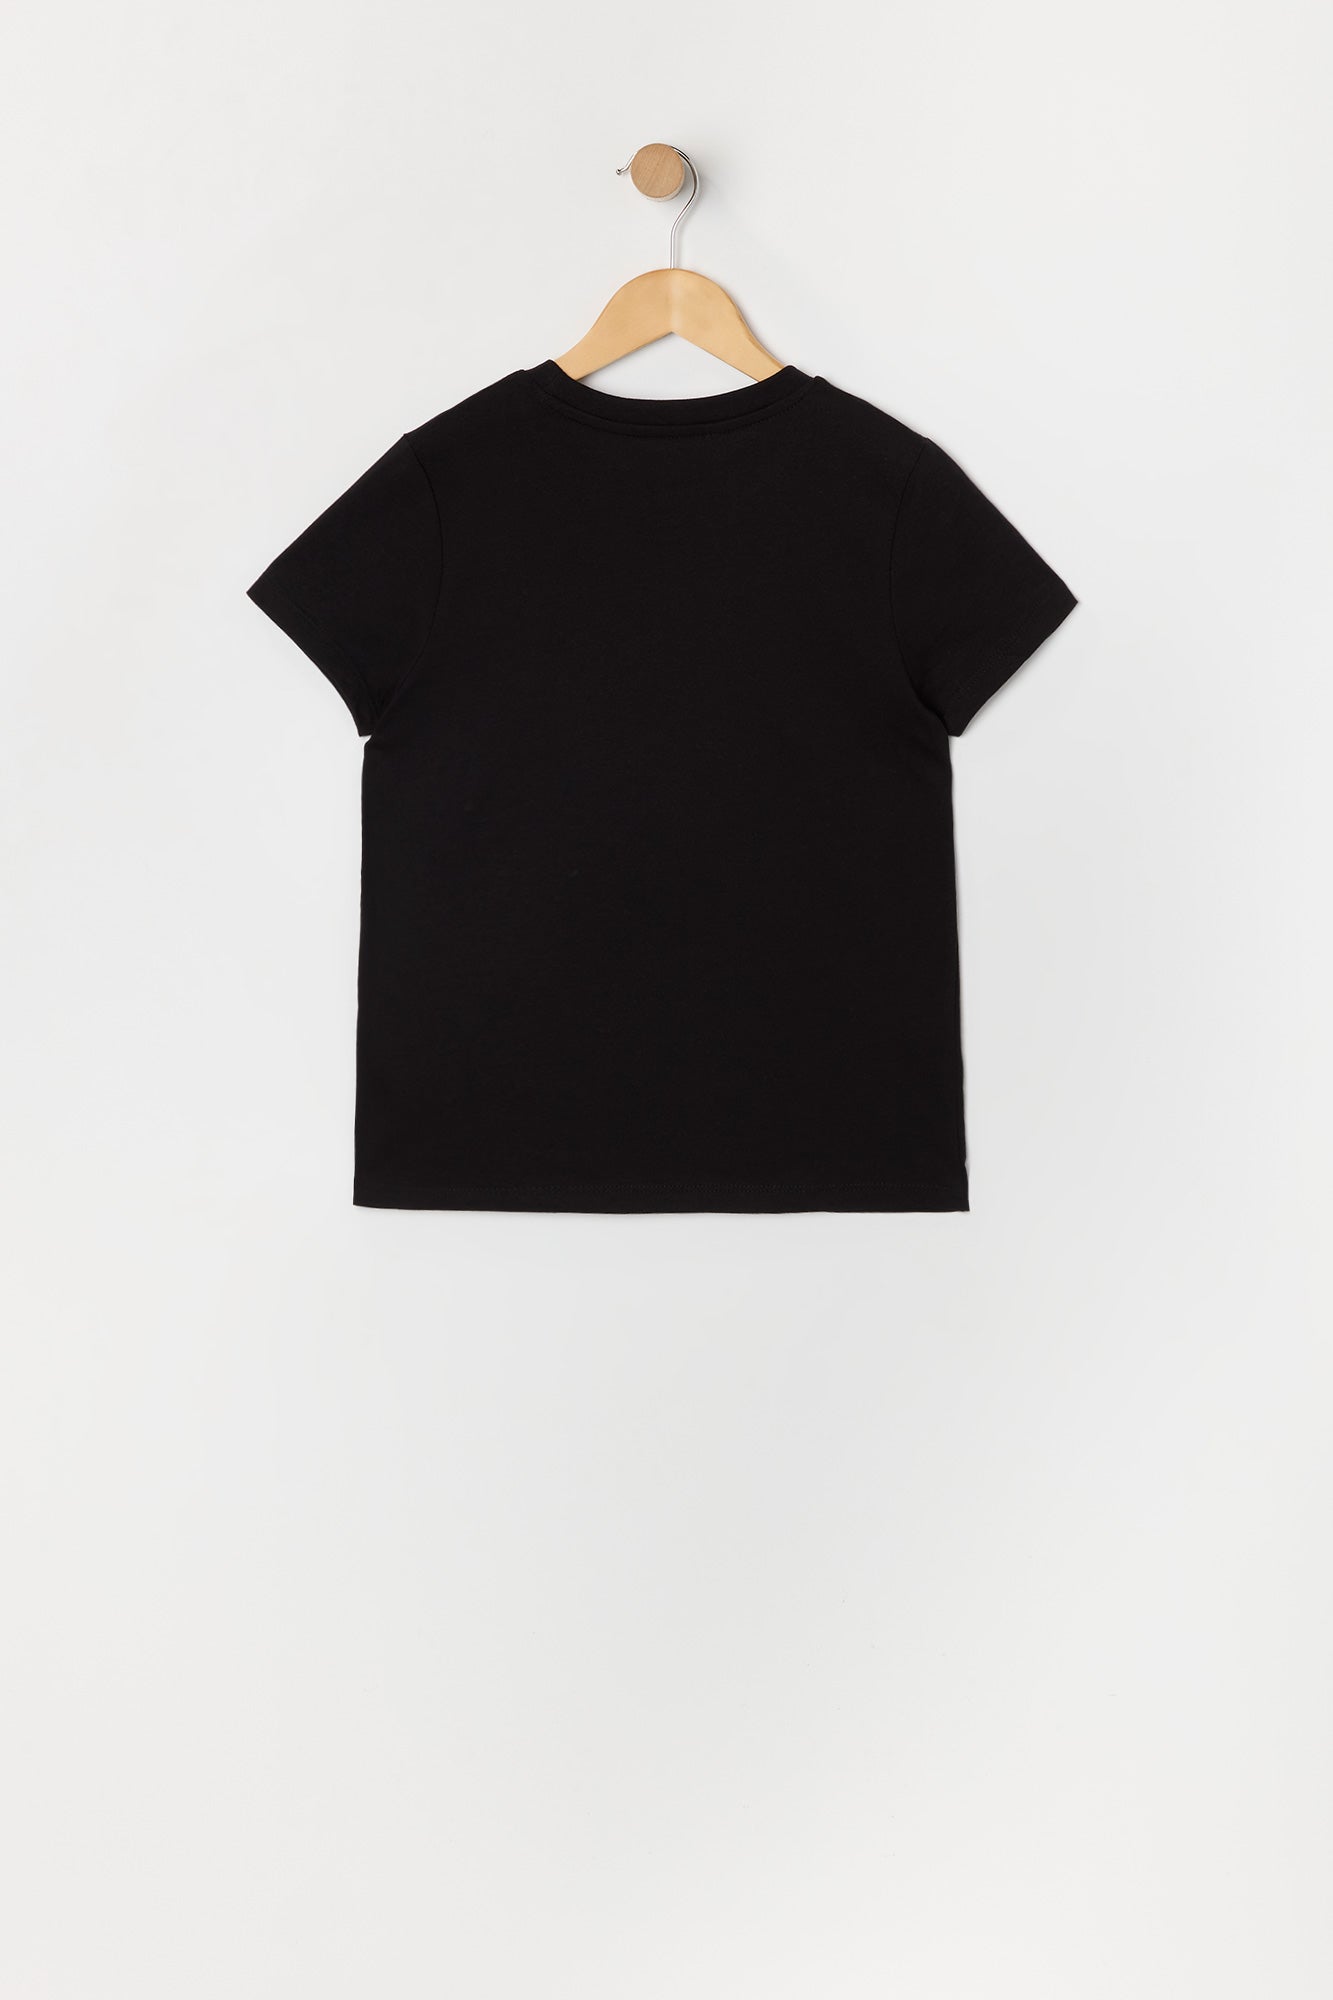 Girls Hello Kitty Black Graphic T-Shirt